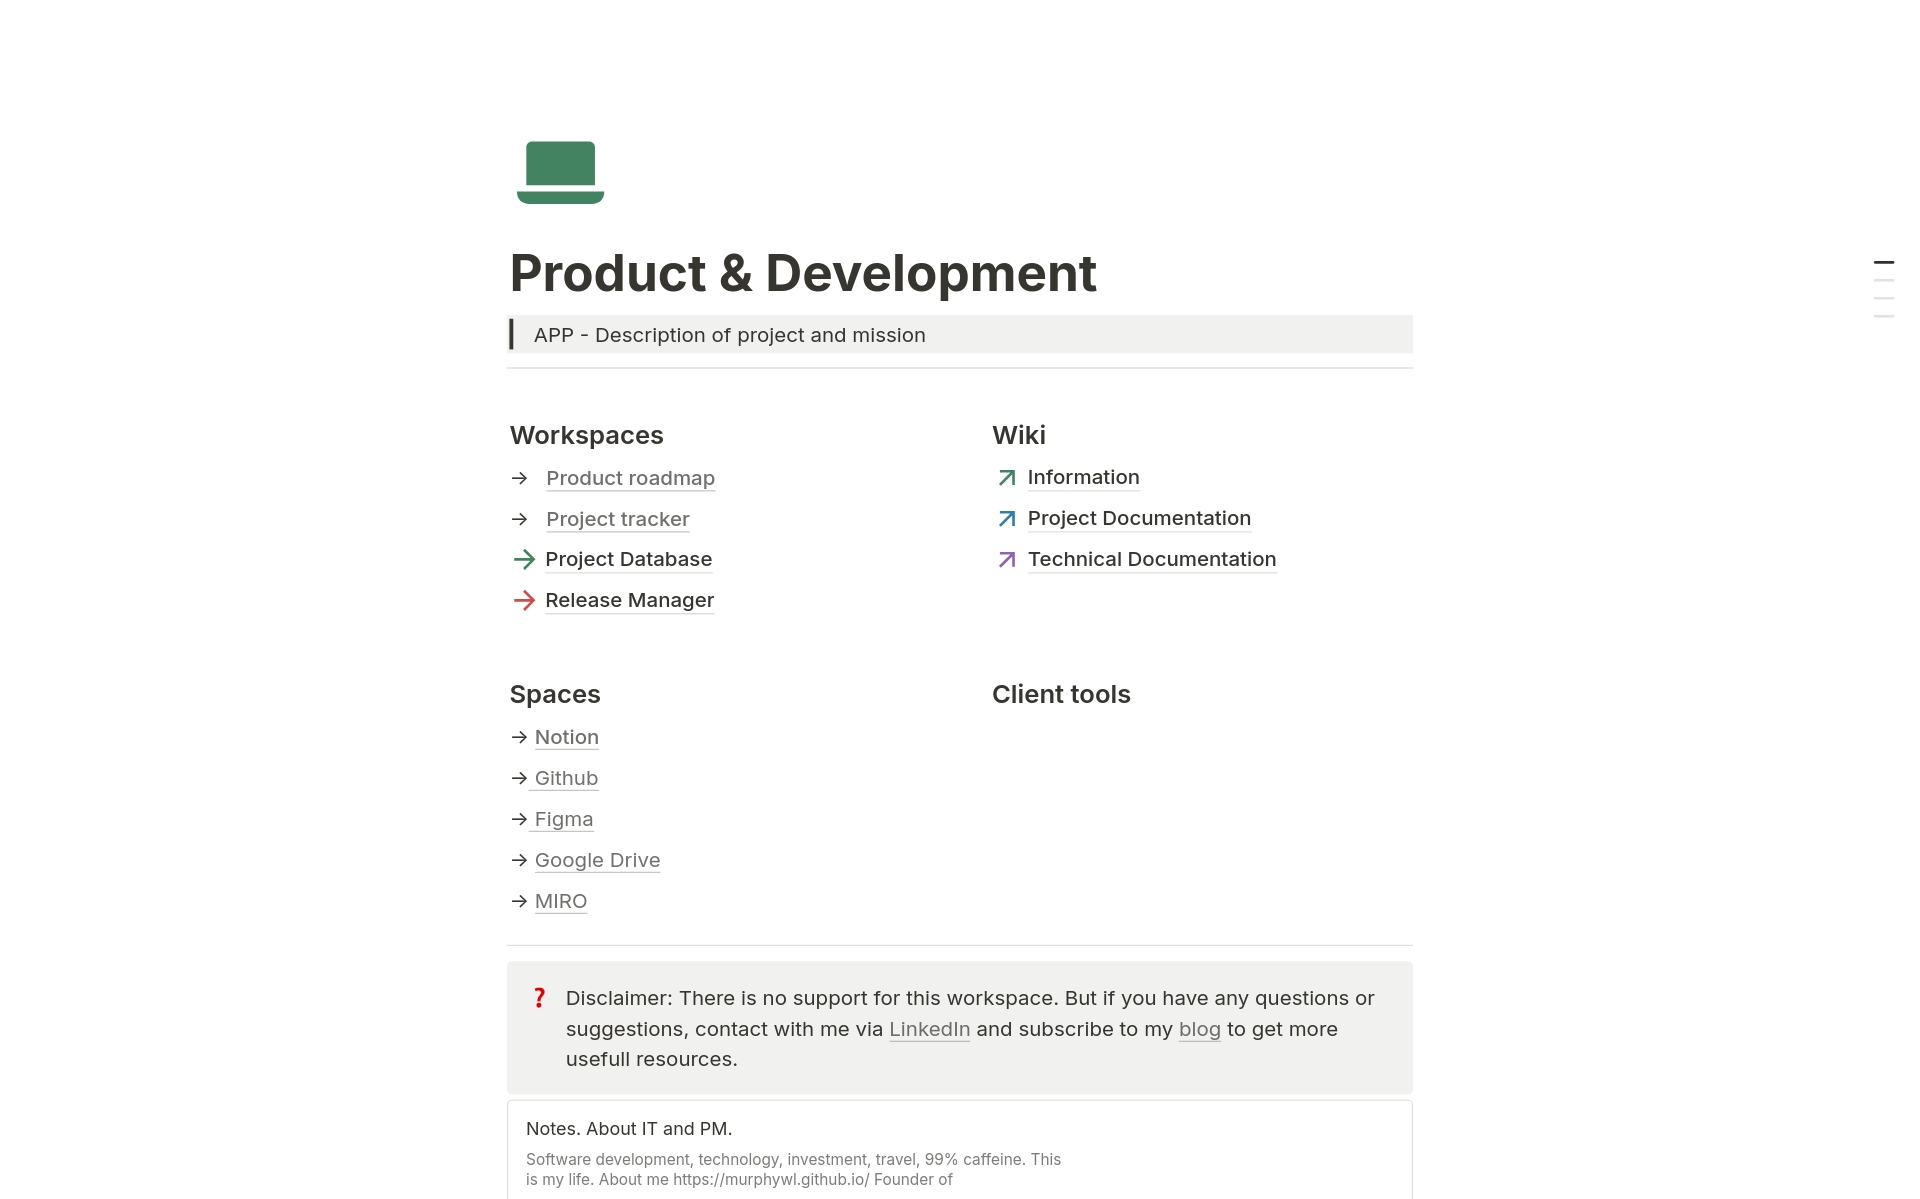 Vista previa de una plantilla para Product & Development